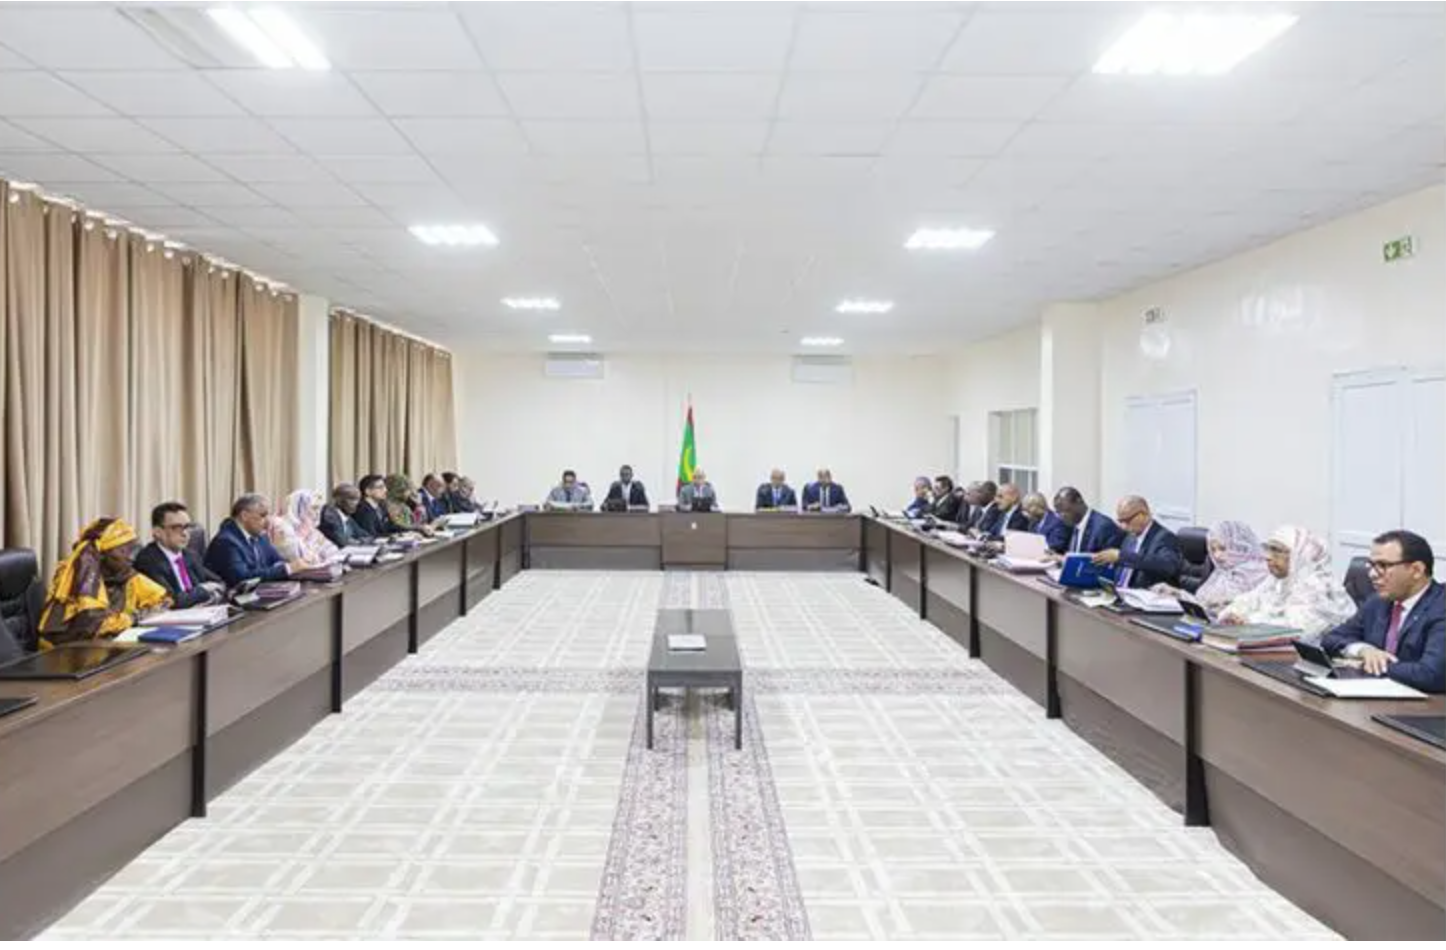 Importantes mesures en faveur de la ville de Nouadhibou lors de la réunion lundi du conseil des ministres dans cette ville